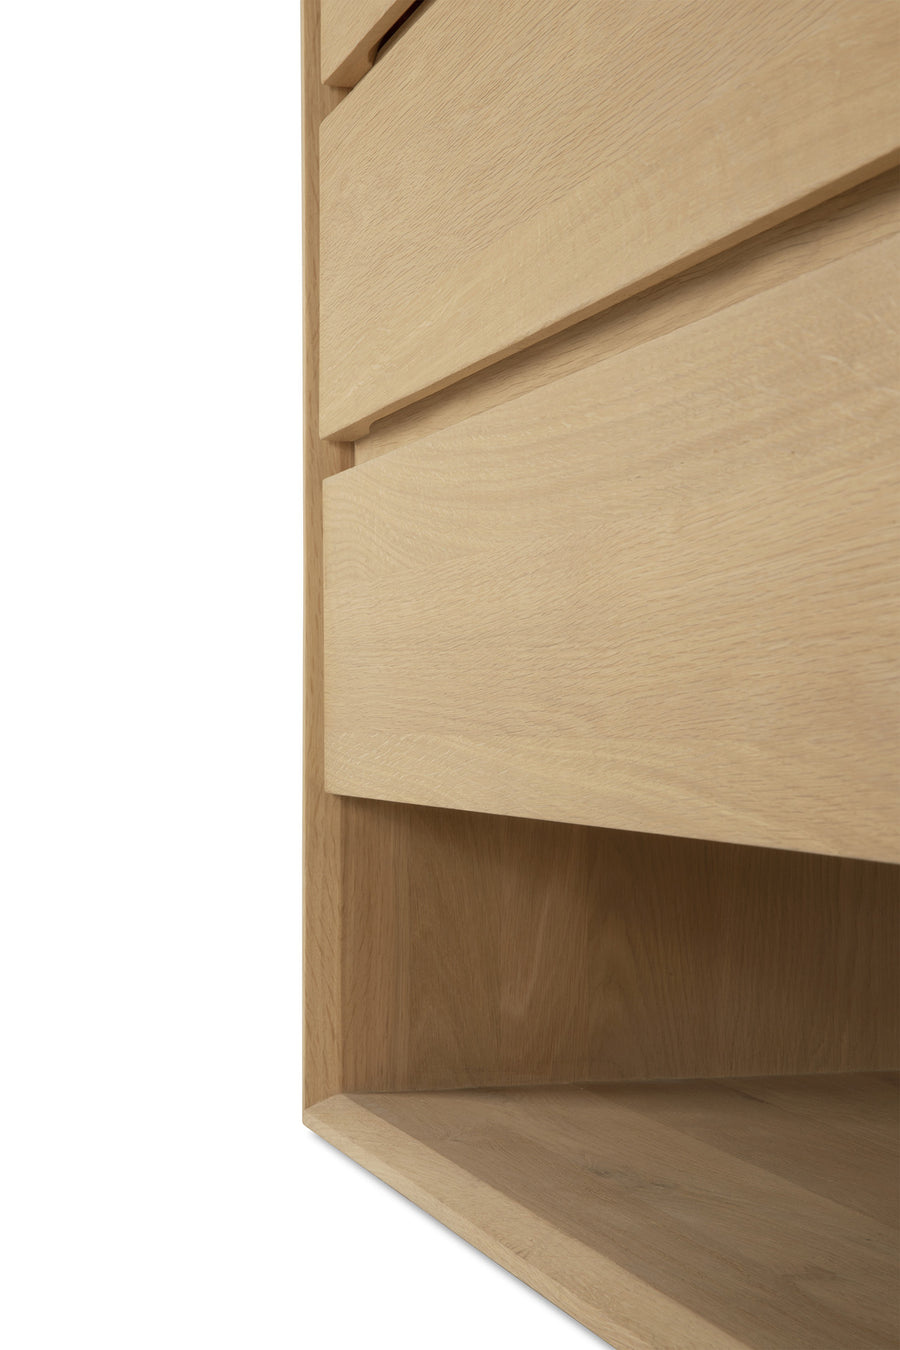 Nordic Dresser - Oak